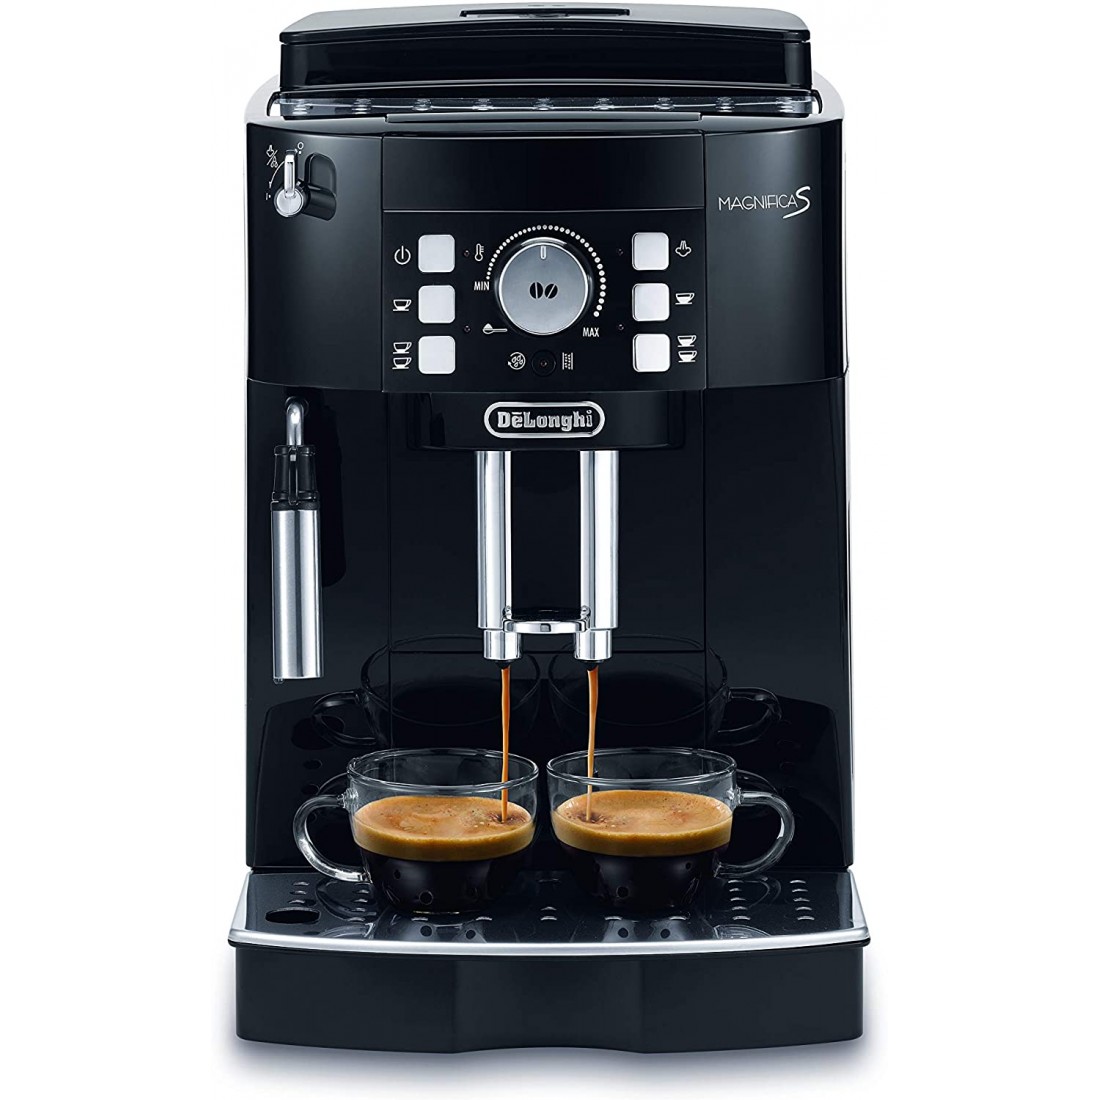 Máy pha cà phê tự động Delonghi ECAM 21.116.B, Hệ thống đánh sữa tích hợp